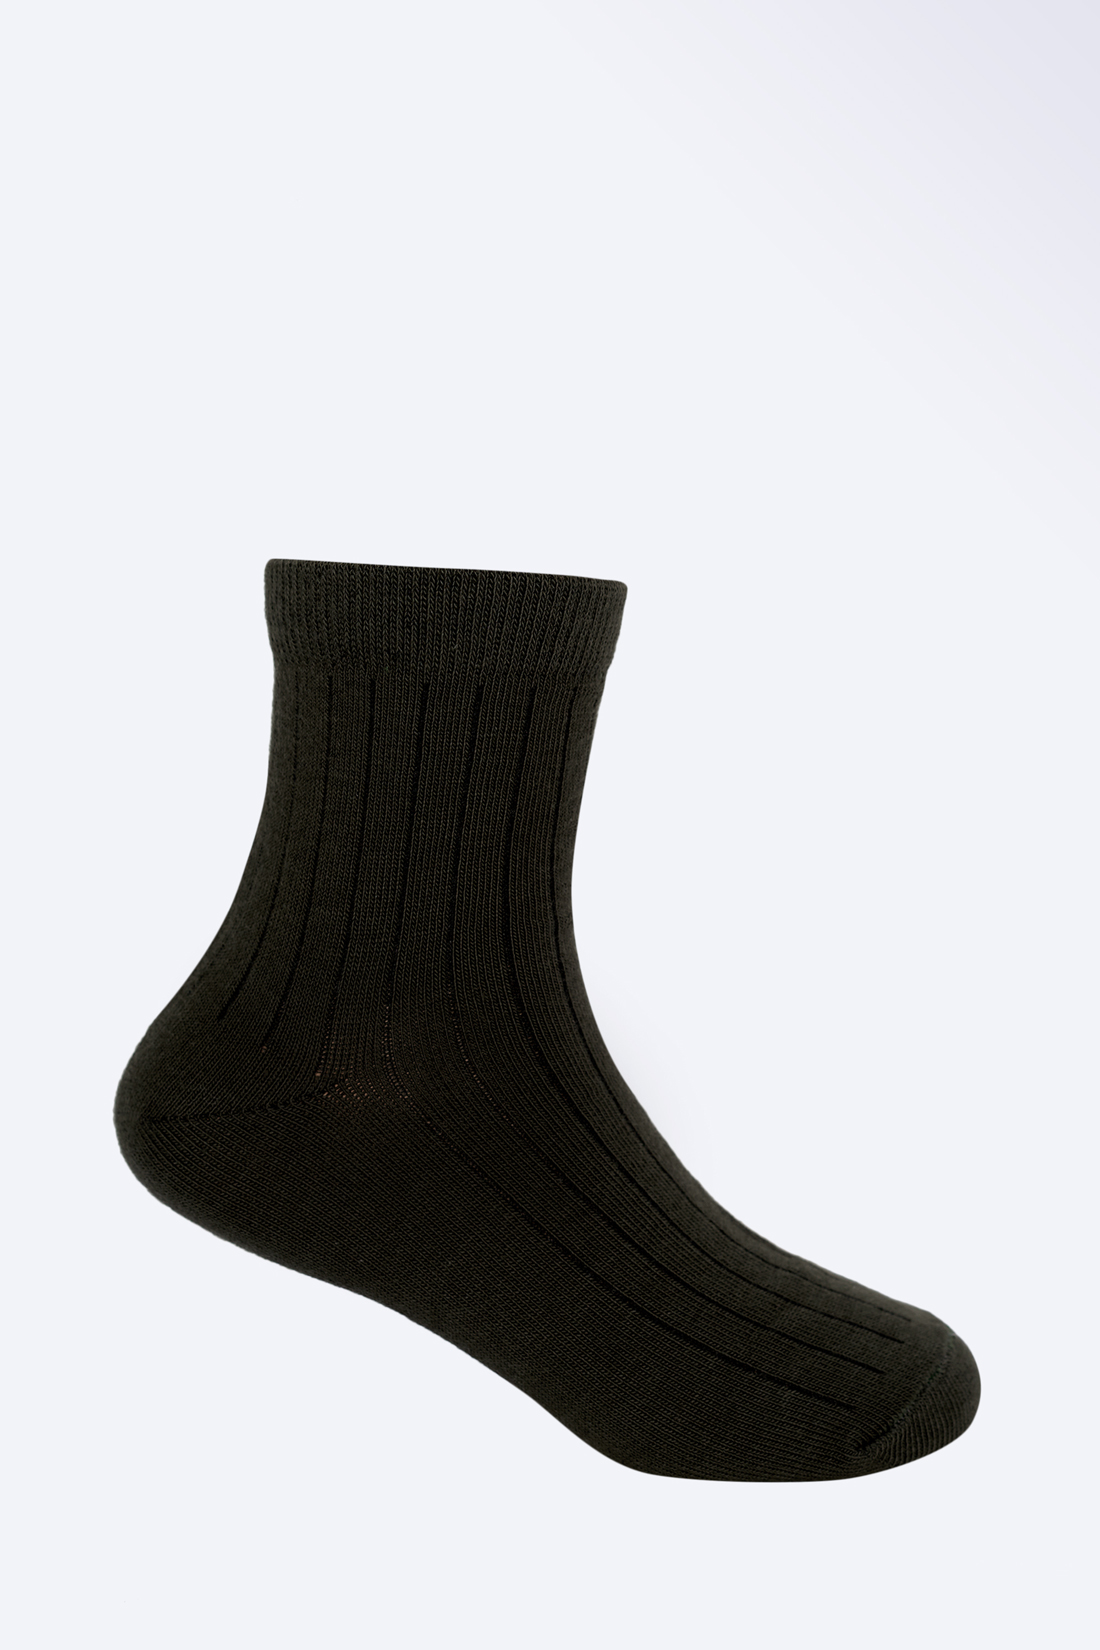 Носки для мальчика (арт. baon BK899507), размер 26/28, цвет зеленый Носки для мальчика (арт. baon BK899507) - фото 1